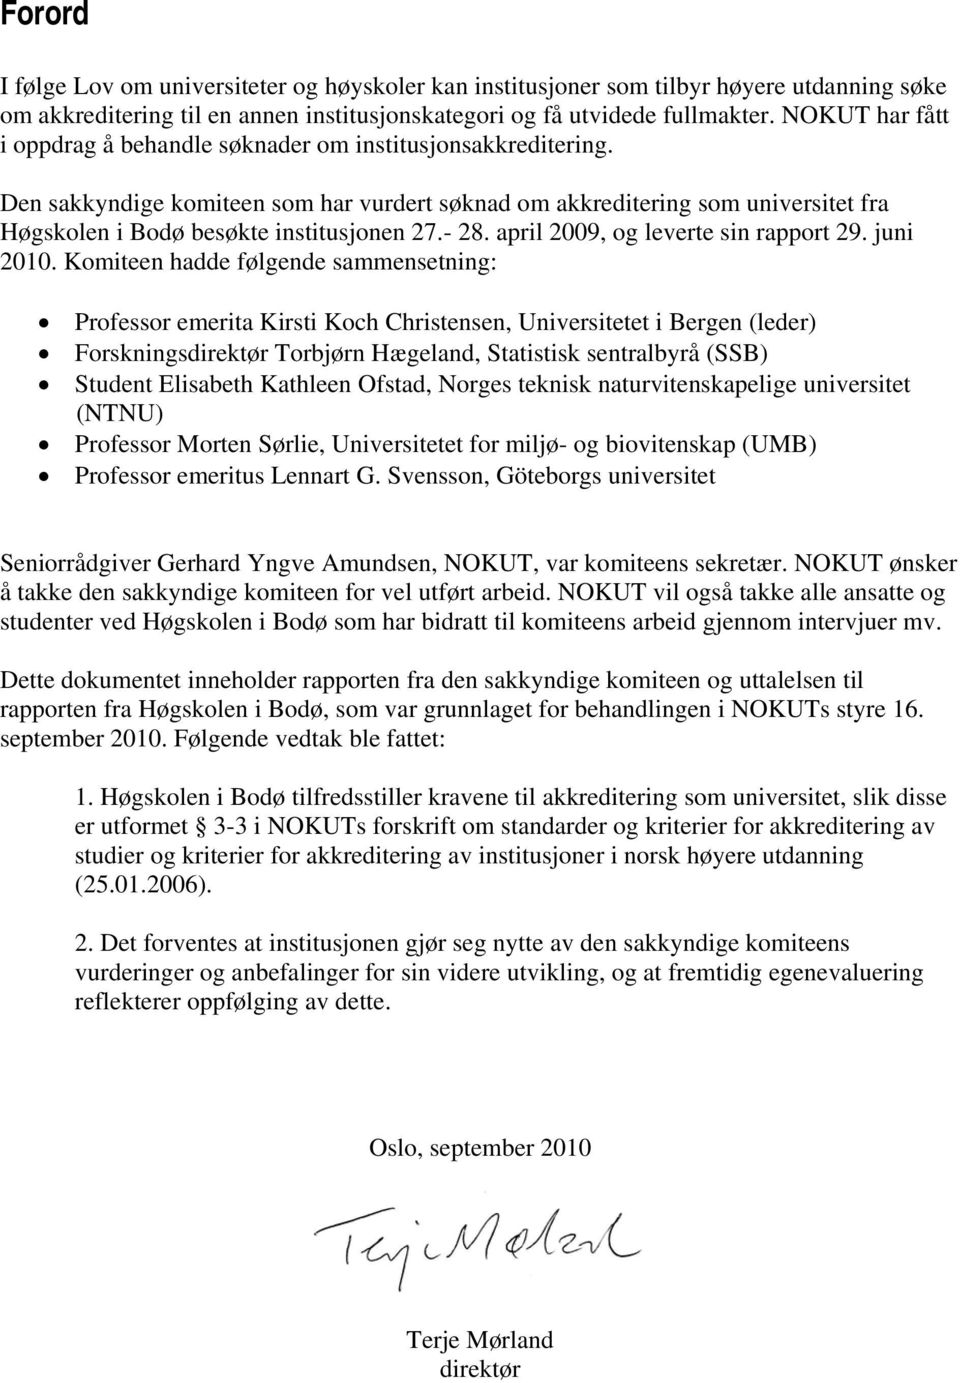 Den sakkyndige komiteen som har vurdert søknad om akkreditering som universitet fra Høgskolen i Bodø besøkte institusjonen 27.- 28. april 2009, og leverte sin rapport 29. juni 2010.